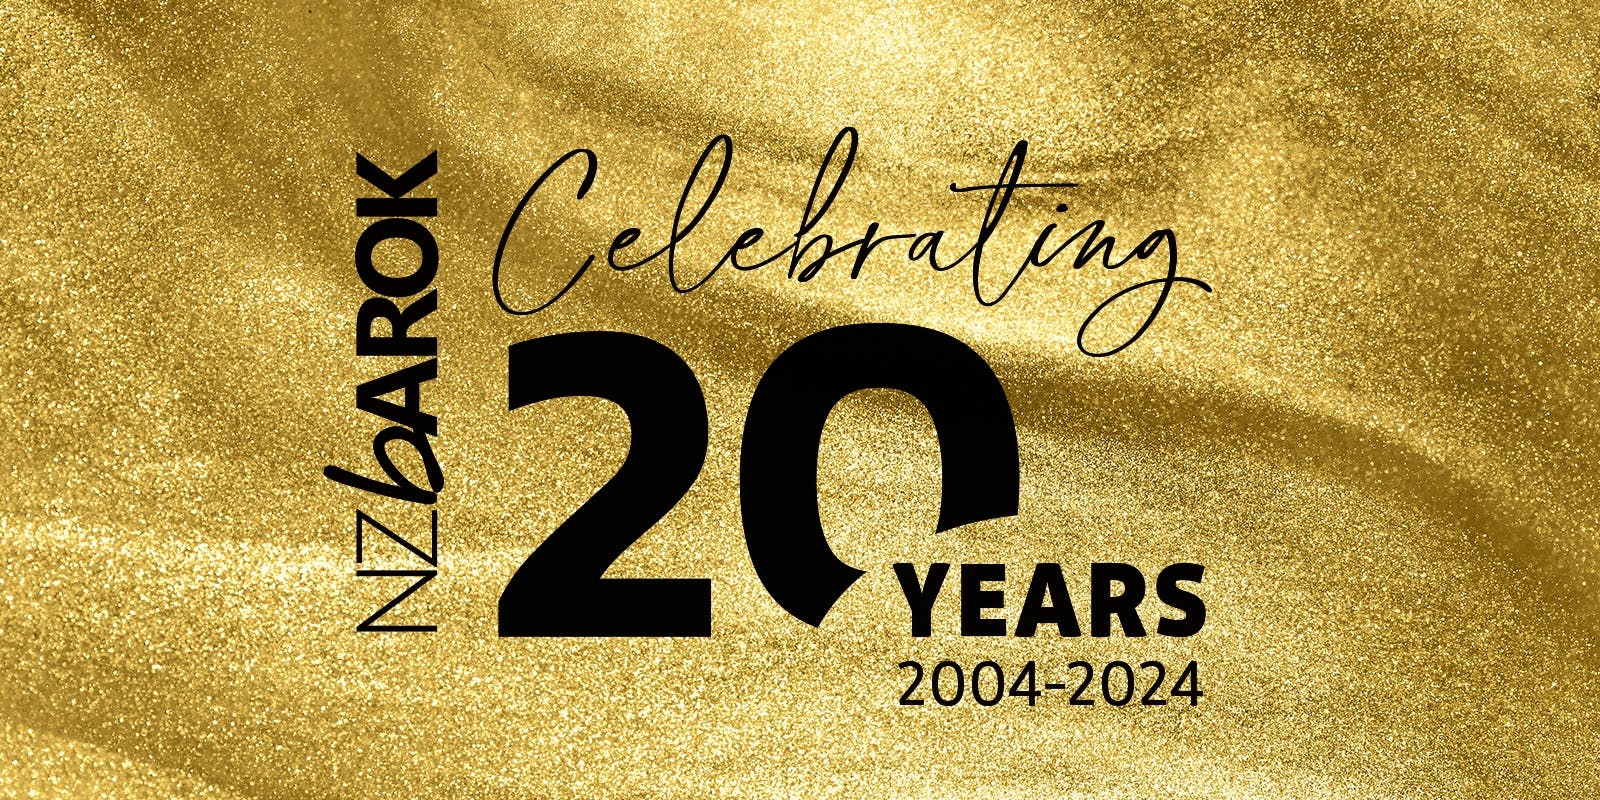 NZ Barok Celebrating 20 Years 2004-2024